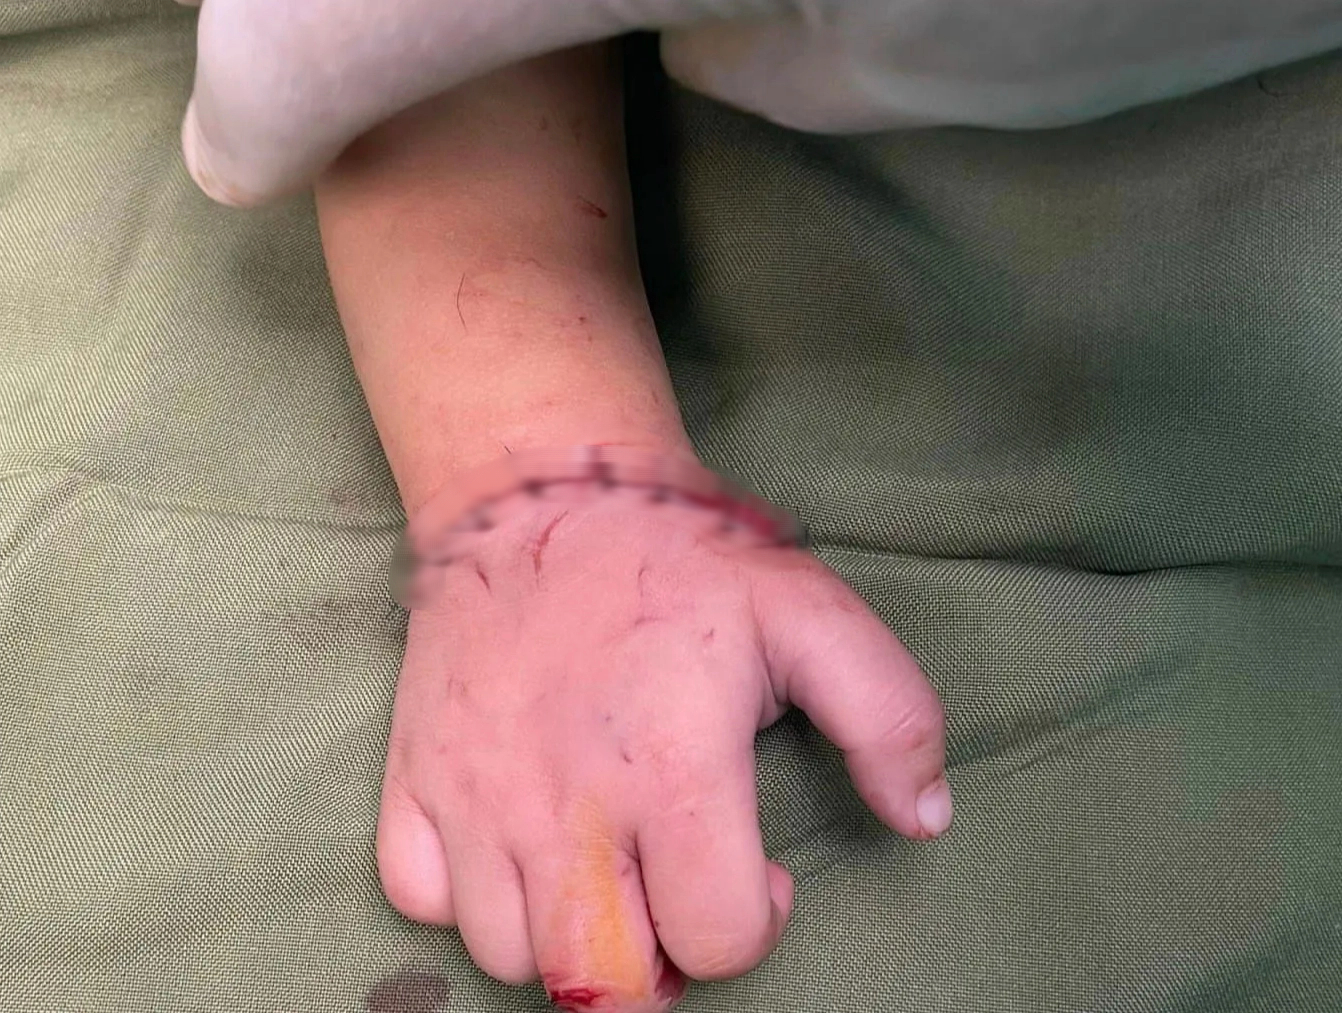 Bé gần 18 tháng tuổi bị máy cắt đá của gia đình cắt đứt lìa bàn tay - Ảnh 3.